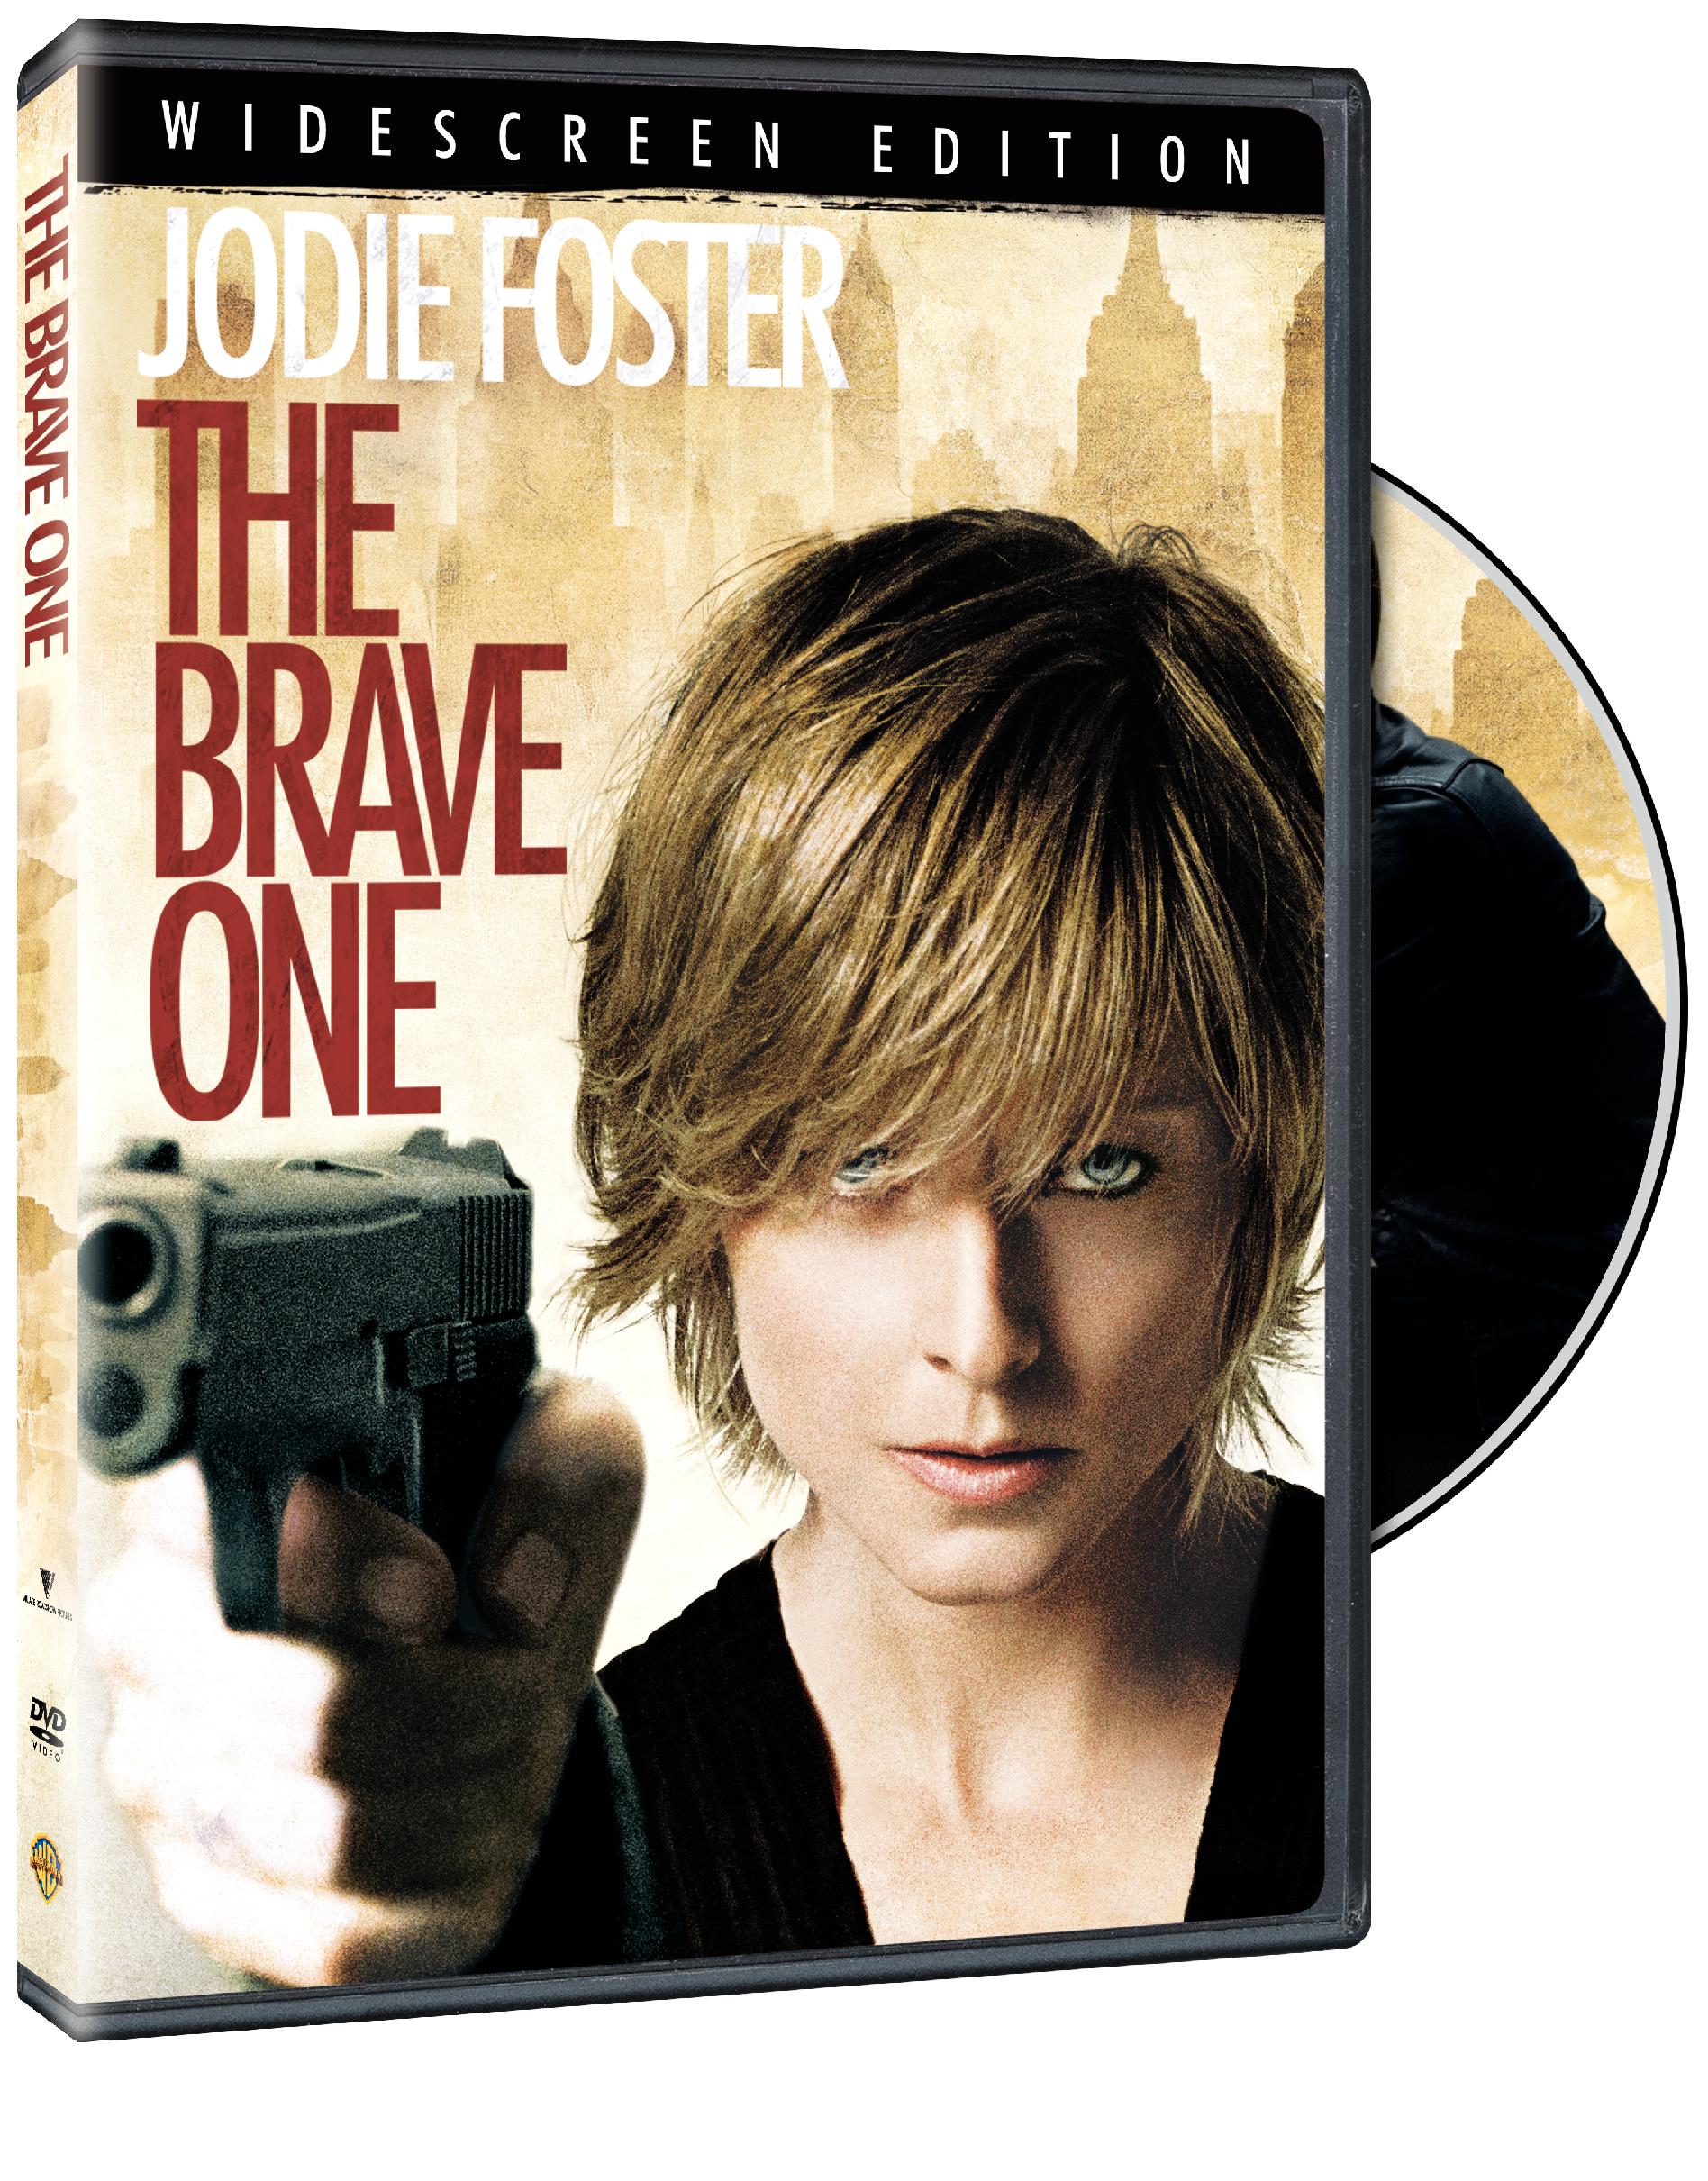 BRAVE ONE (2007) / (AC3 DOL SUB WS)